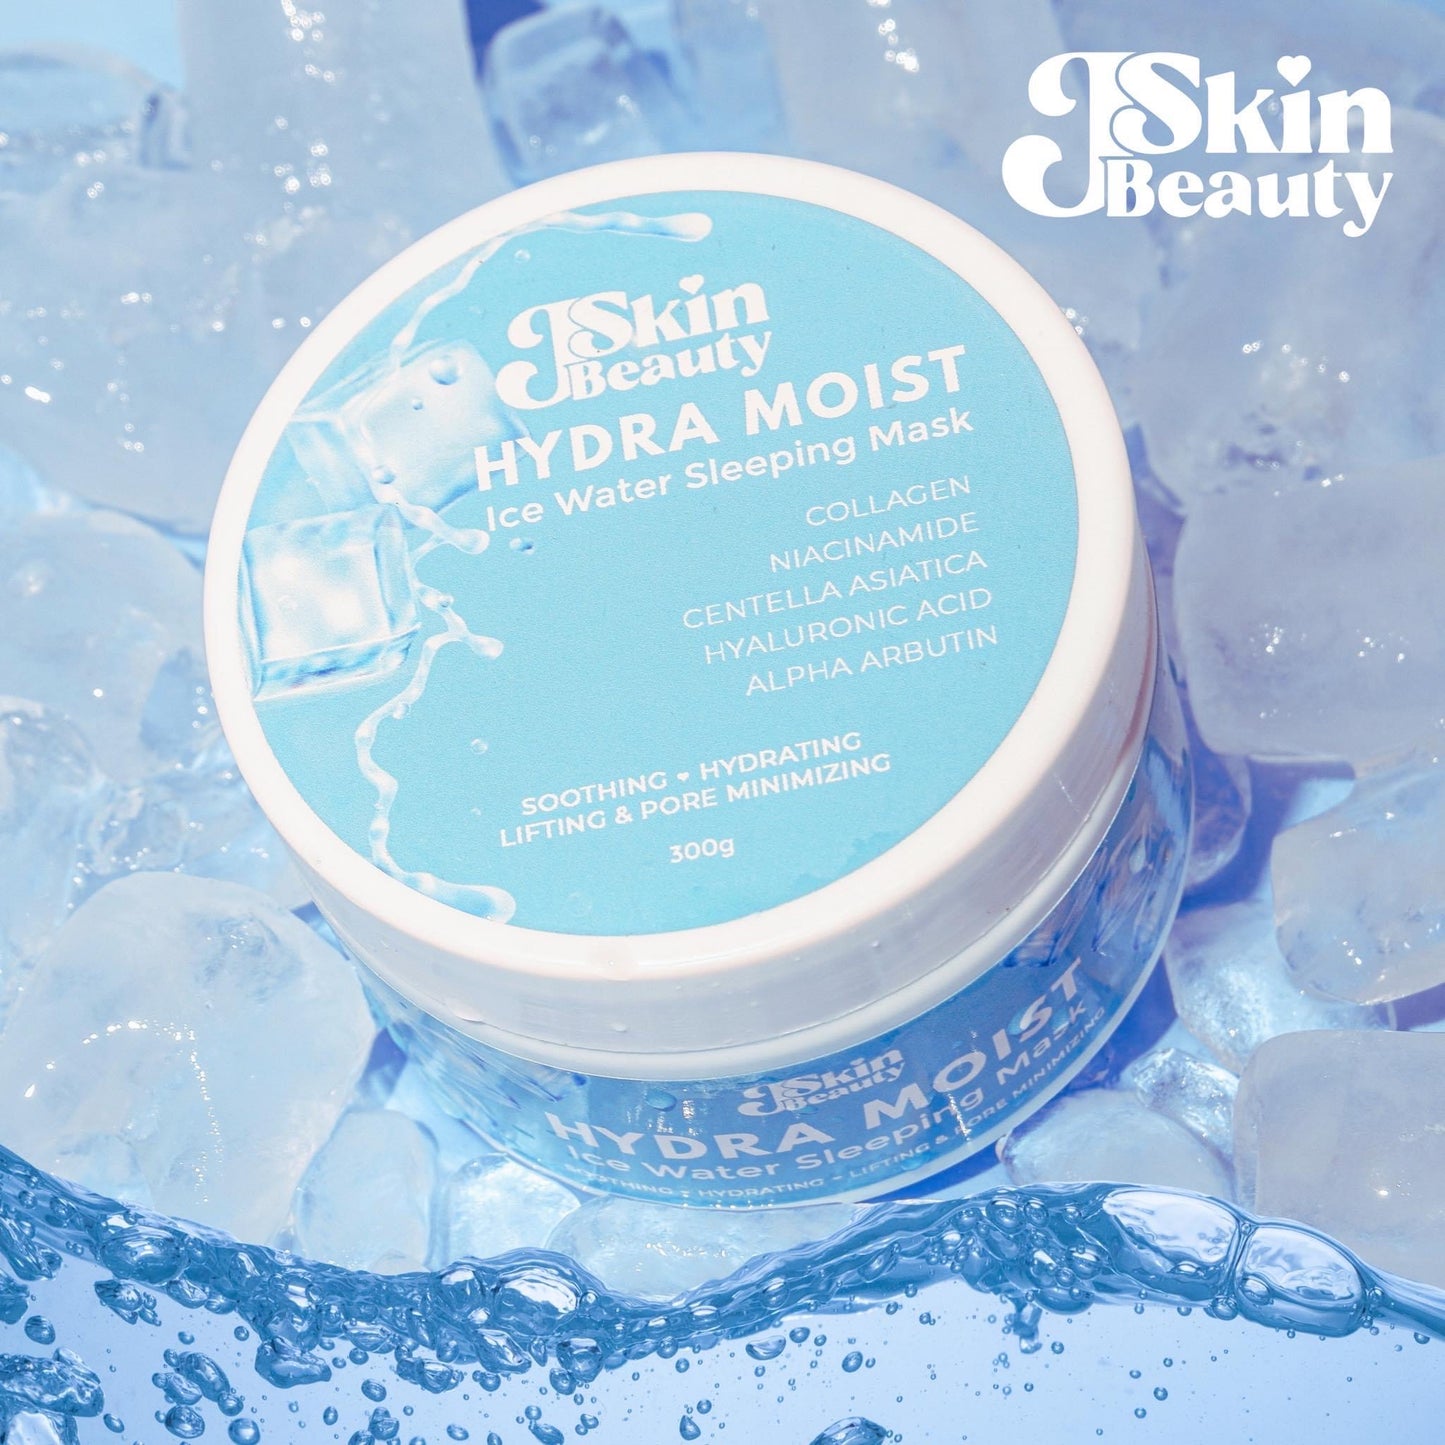 J Skin Beauty Hydra Moist Ice Water Sleeping Mask